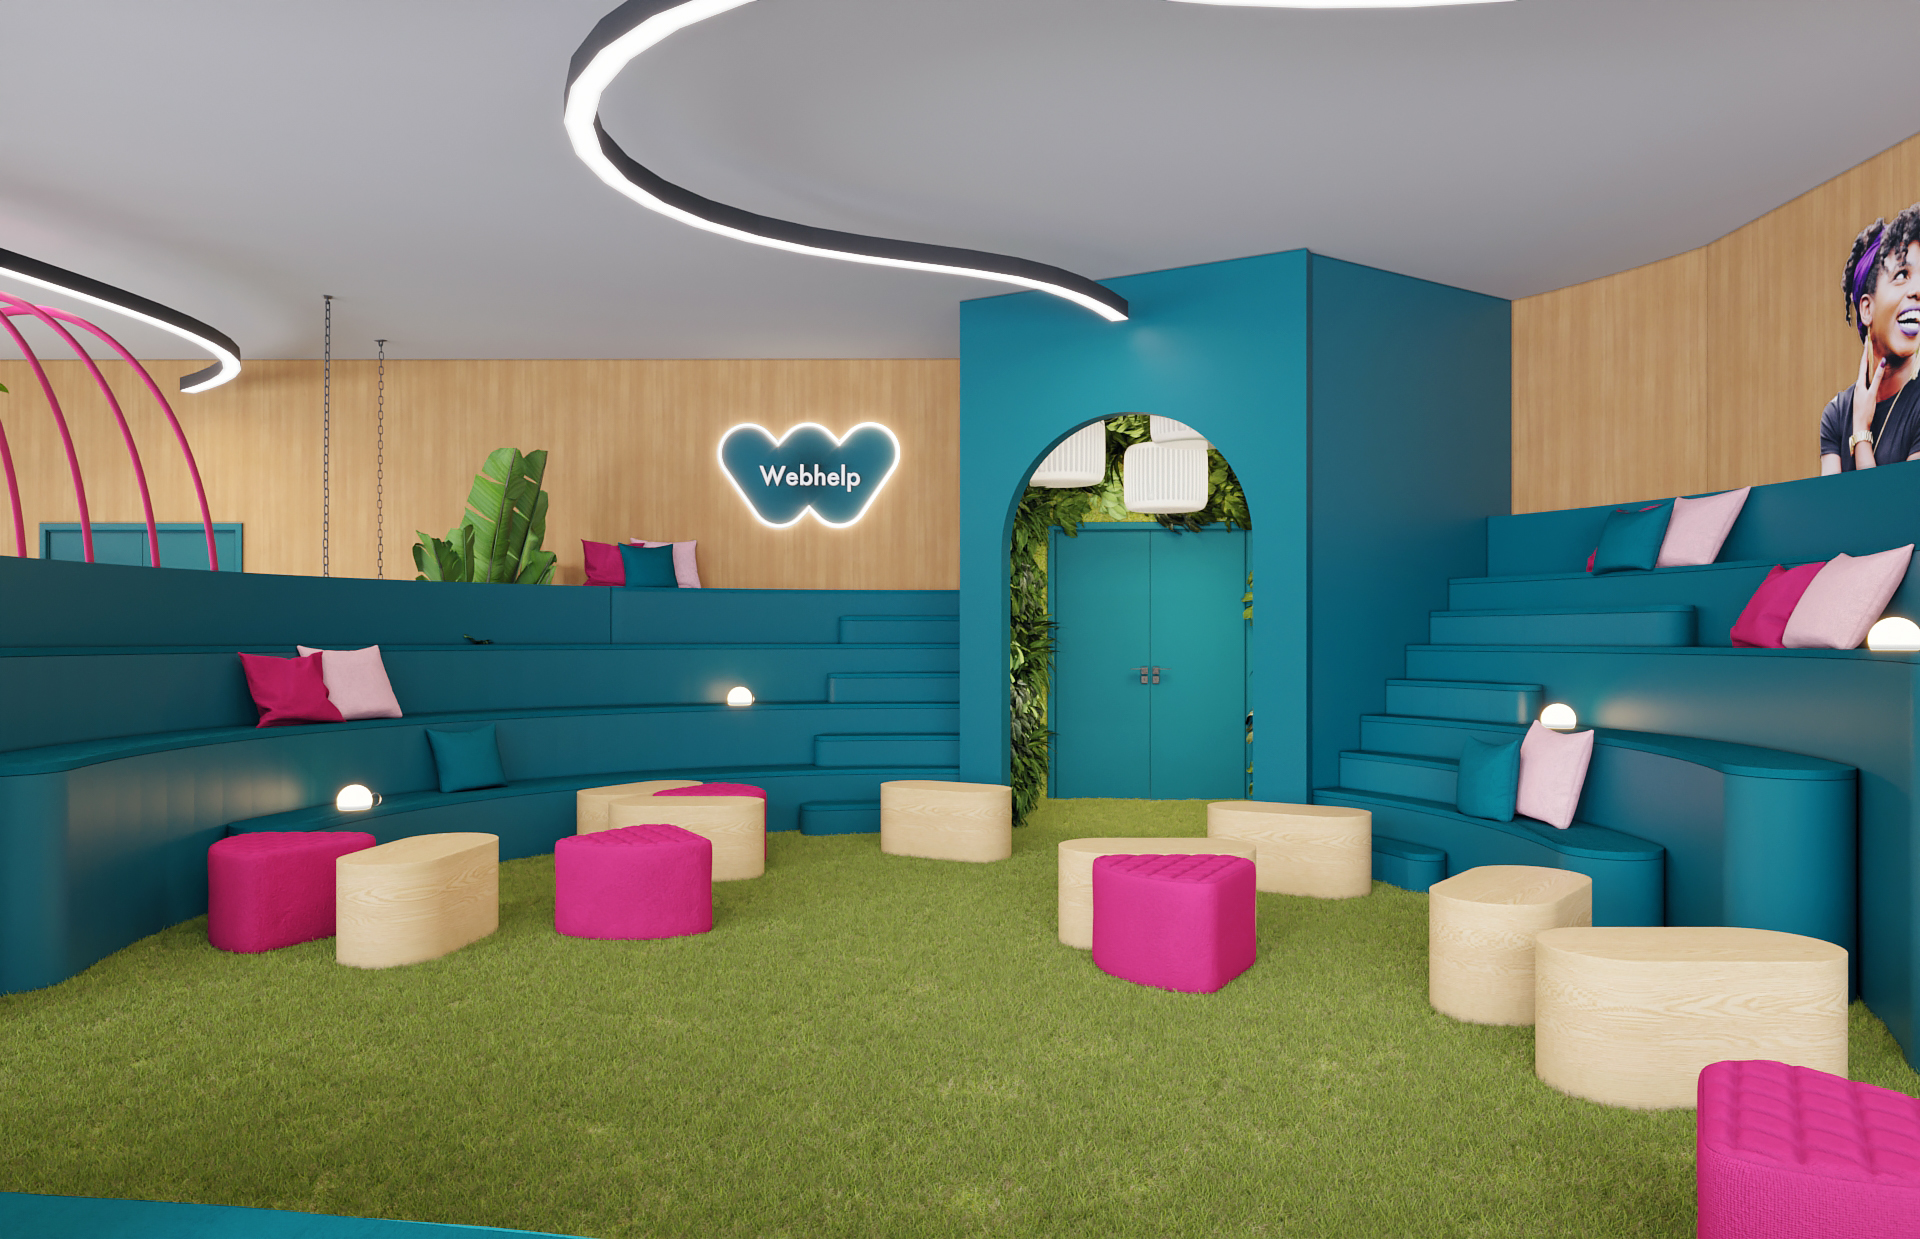 Decoração de um espaço de escritórios; zona lounge colorida com logo - Webhelp